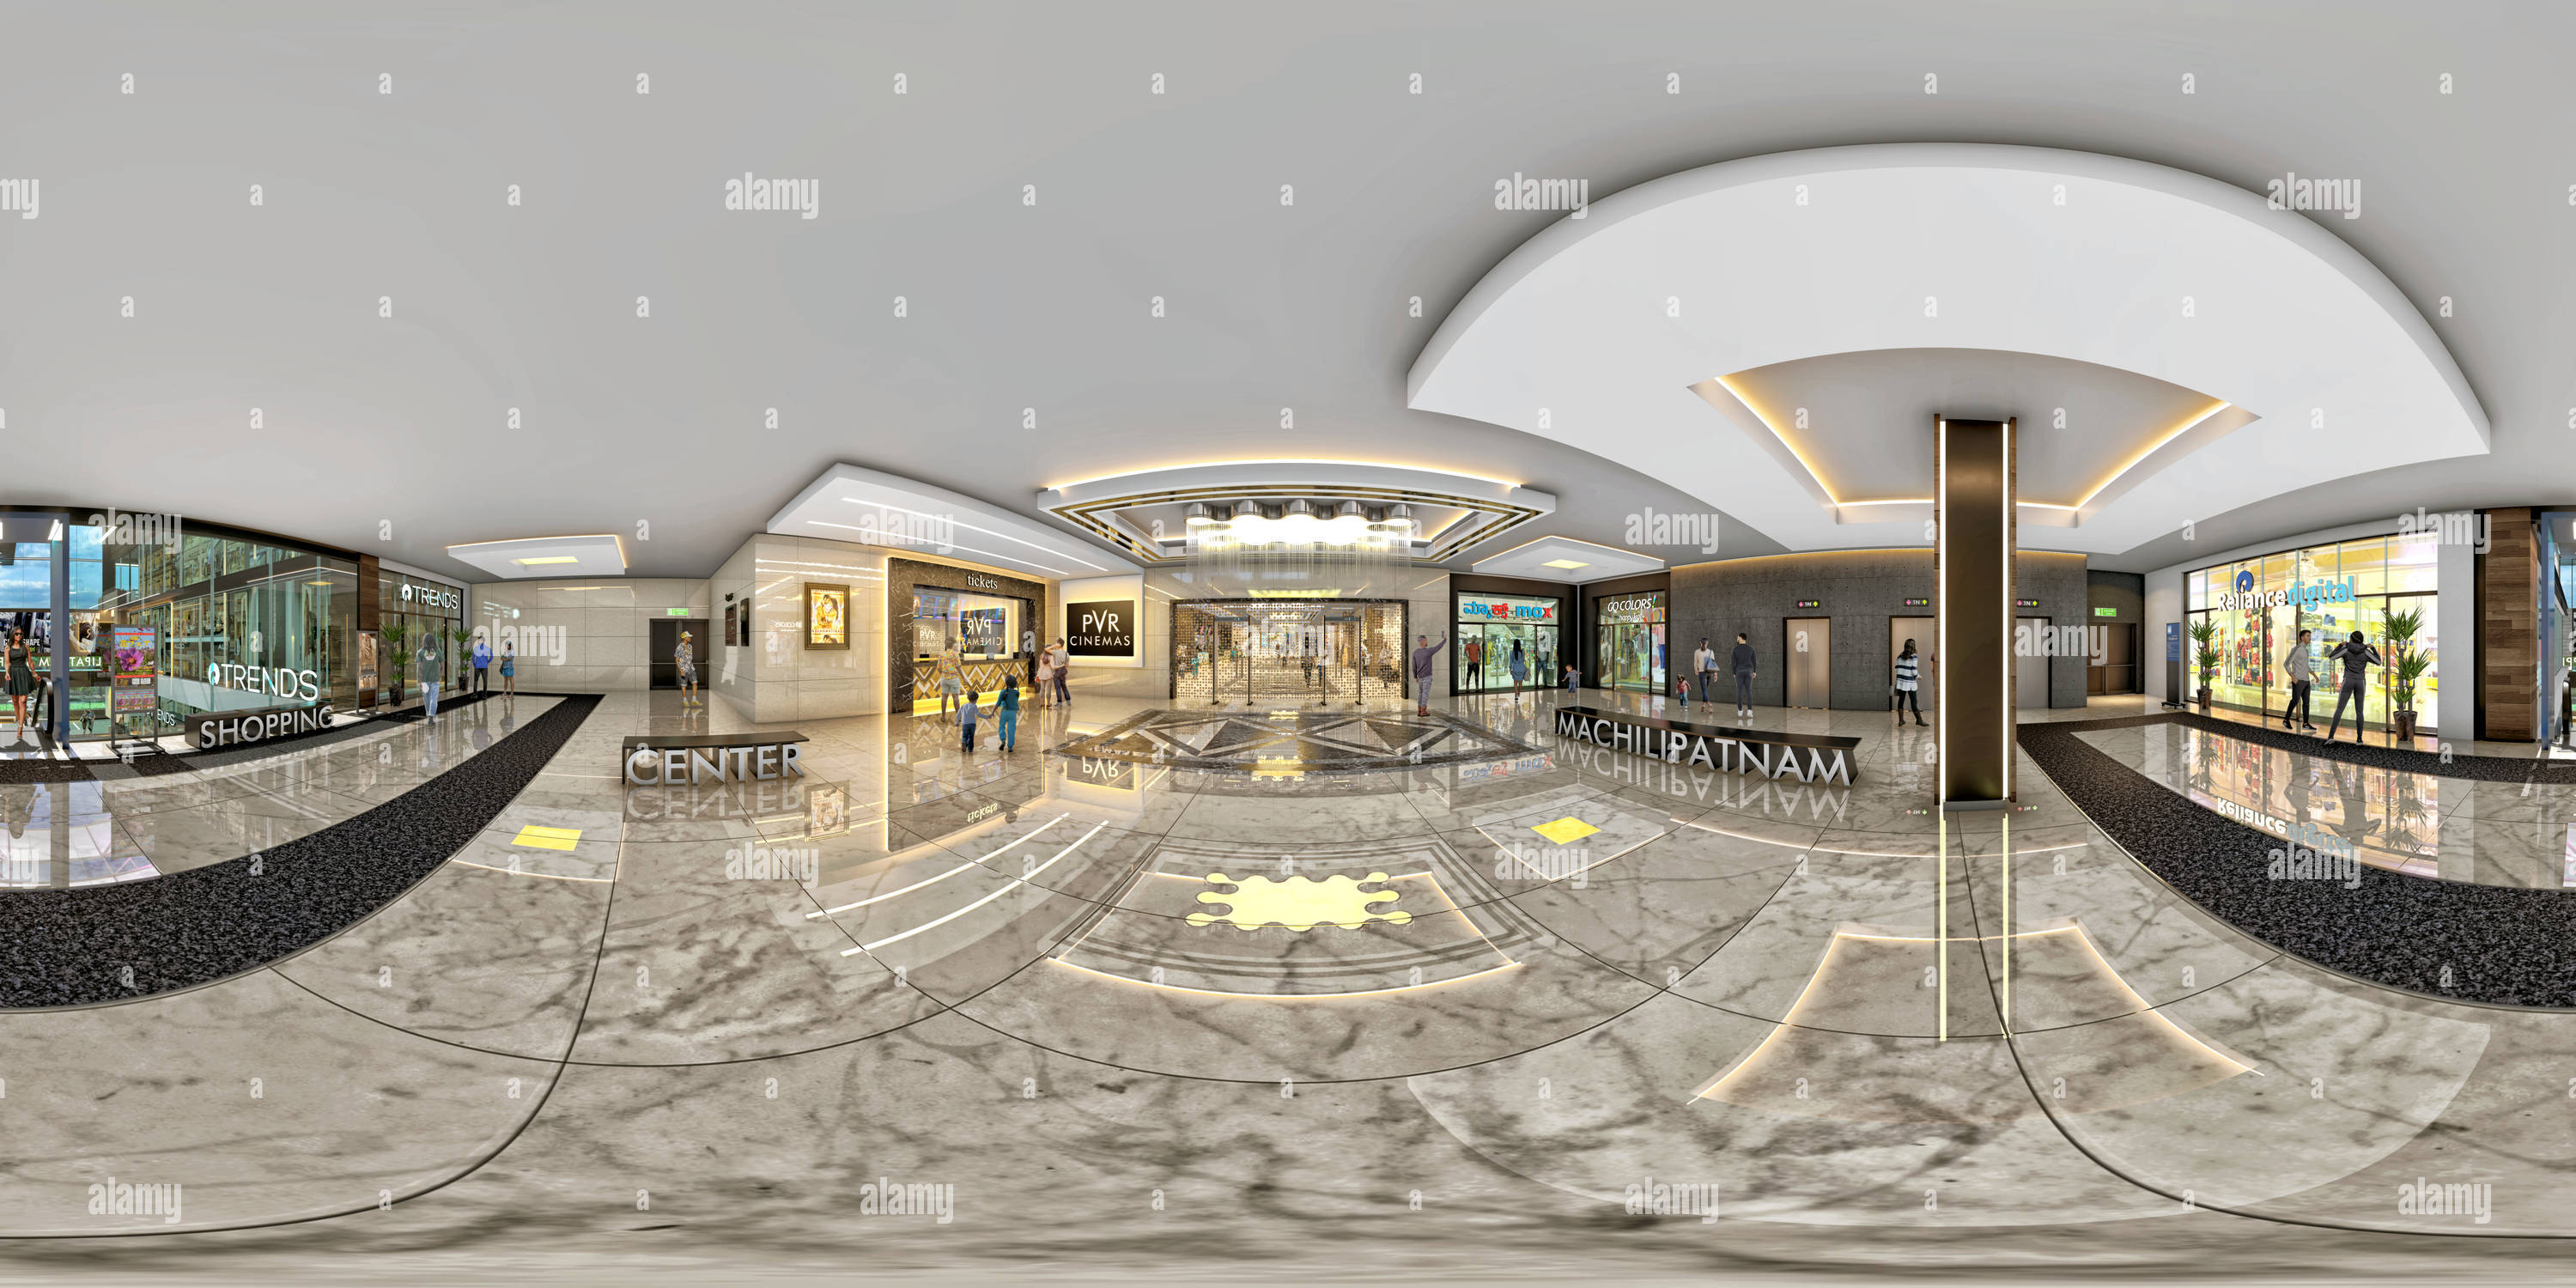 360 degree panoramic view of Machilipatnam Shopping Center PVR Lobby